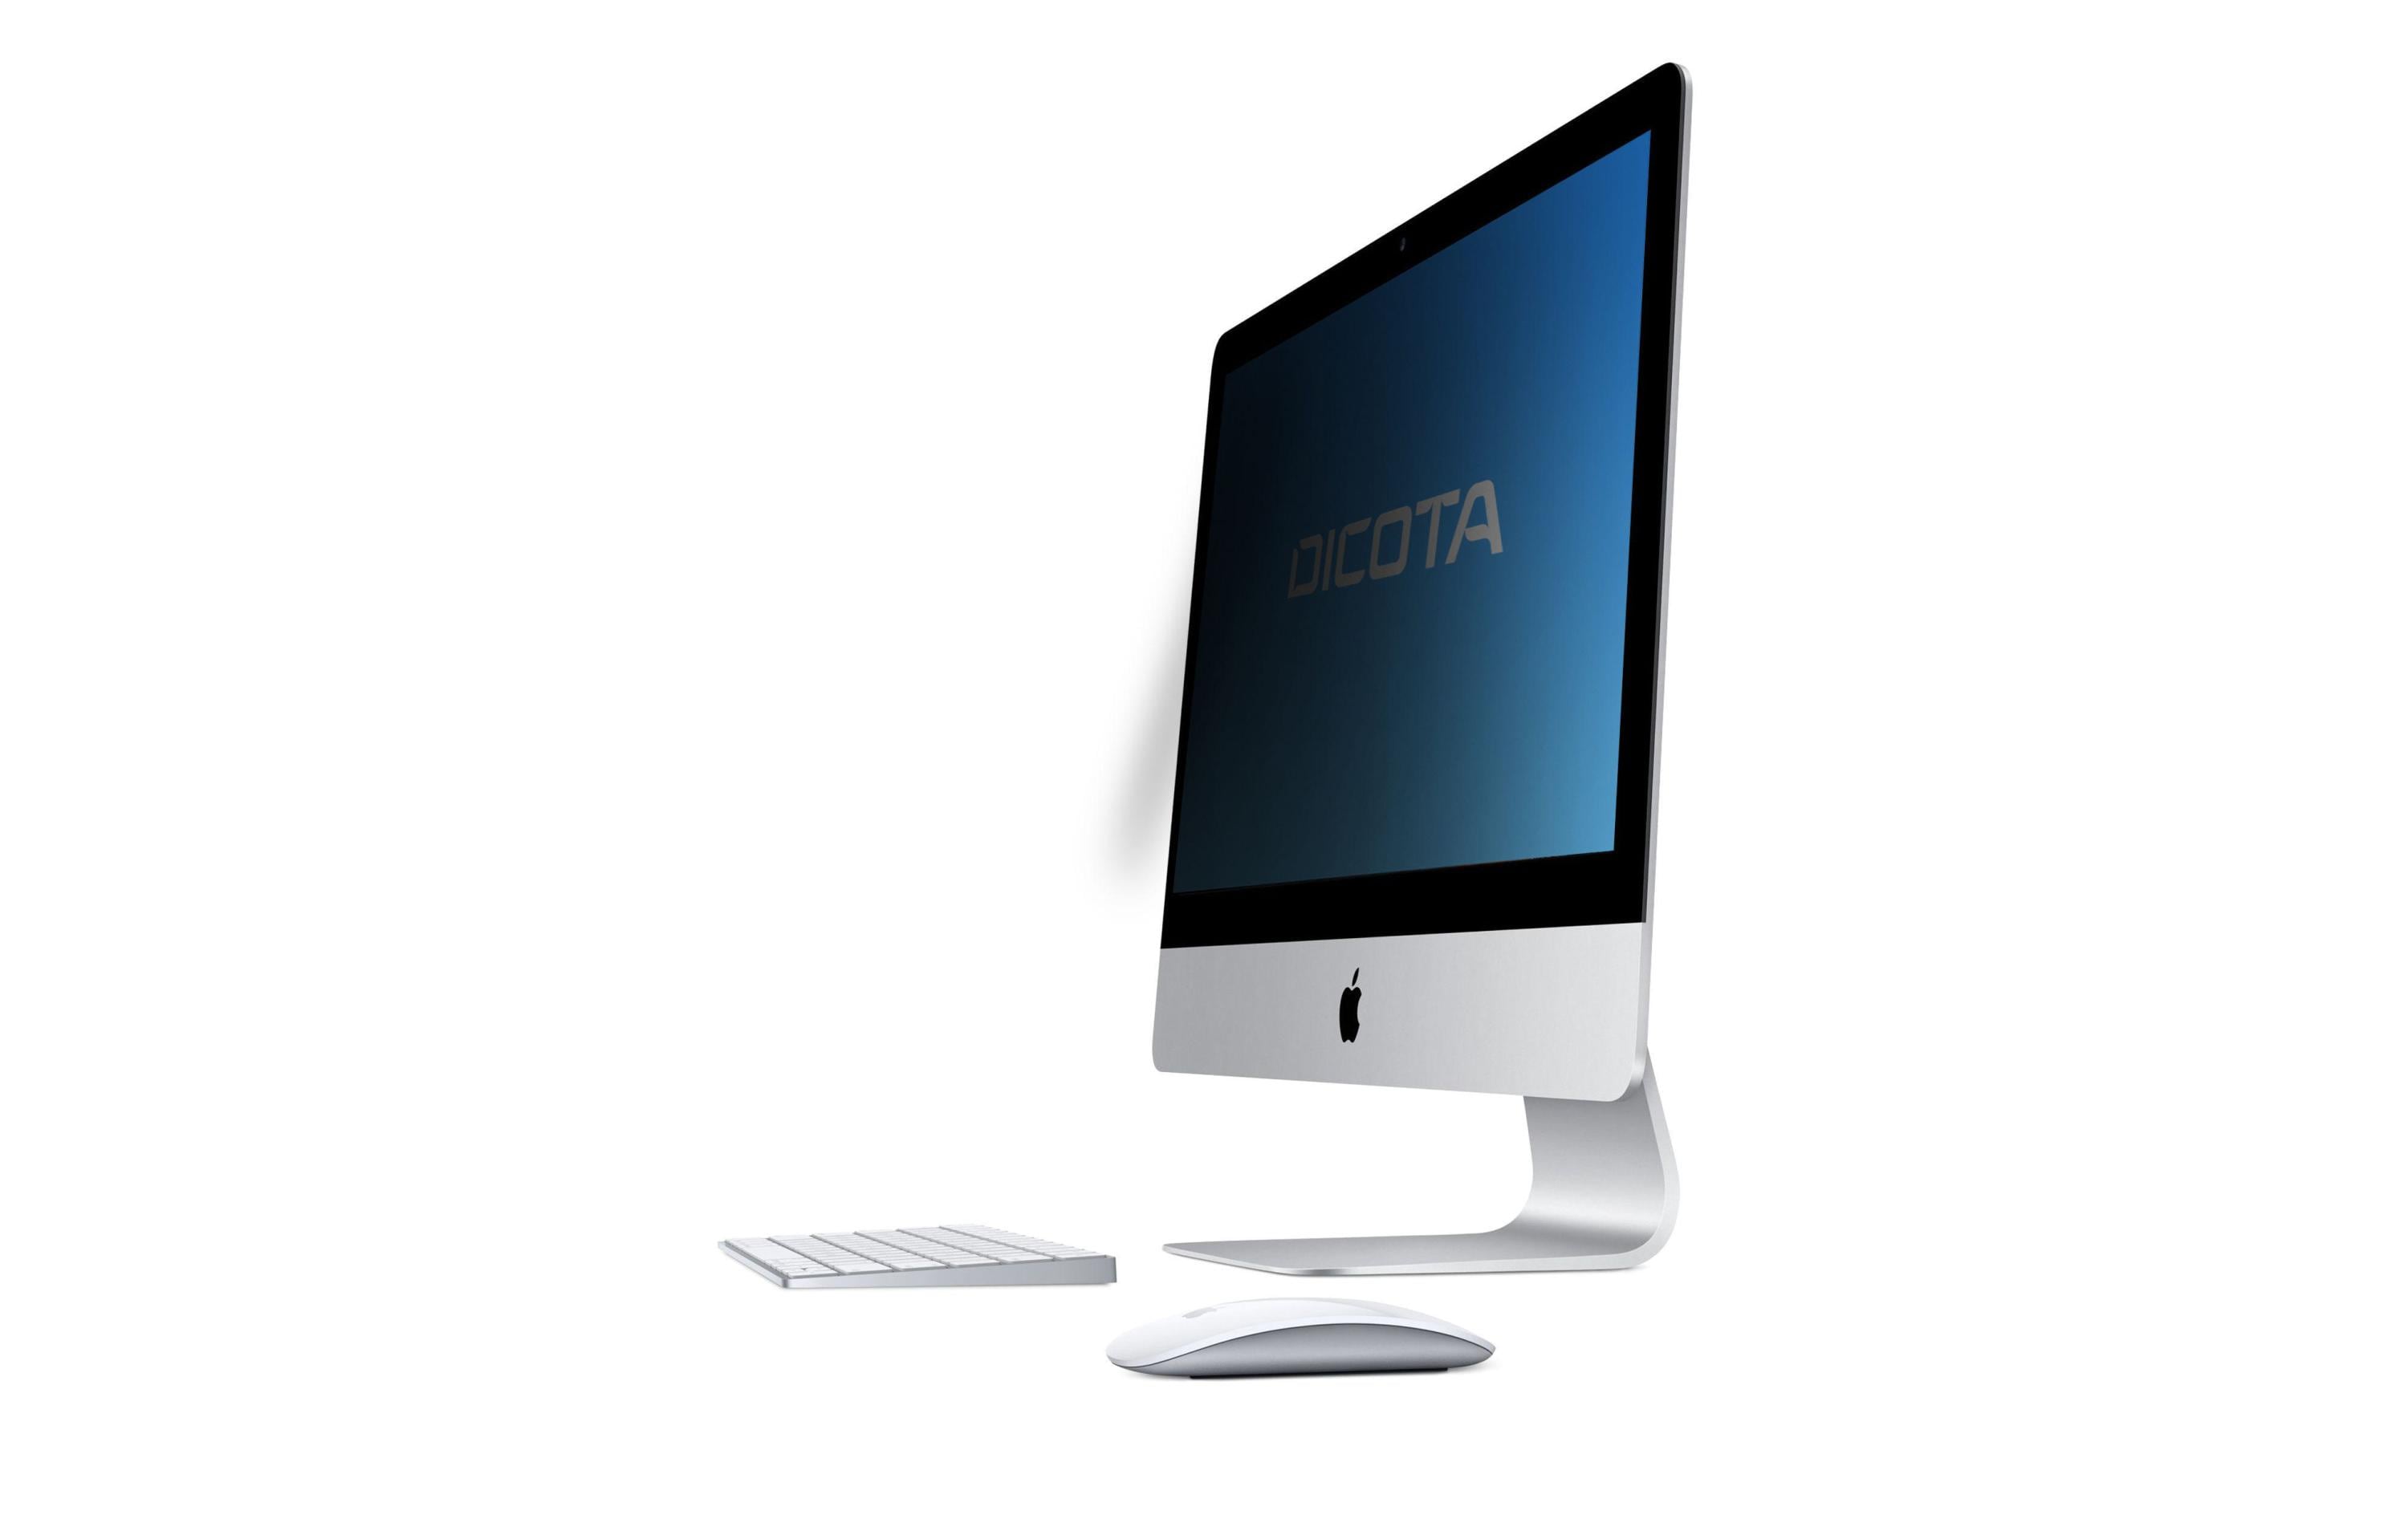 DICOTA Monitor-Bildschirmfolie 2 Way iMac 21/16:9